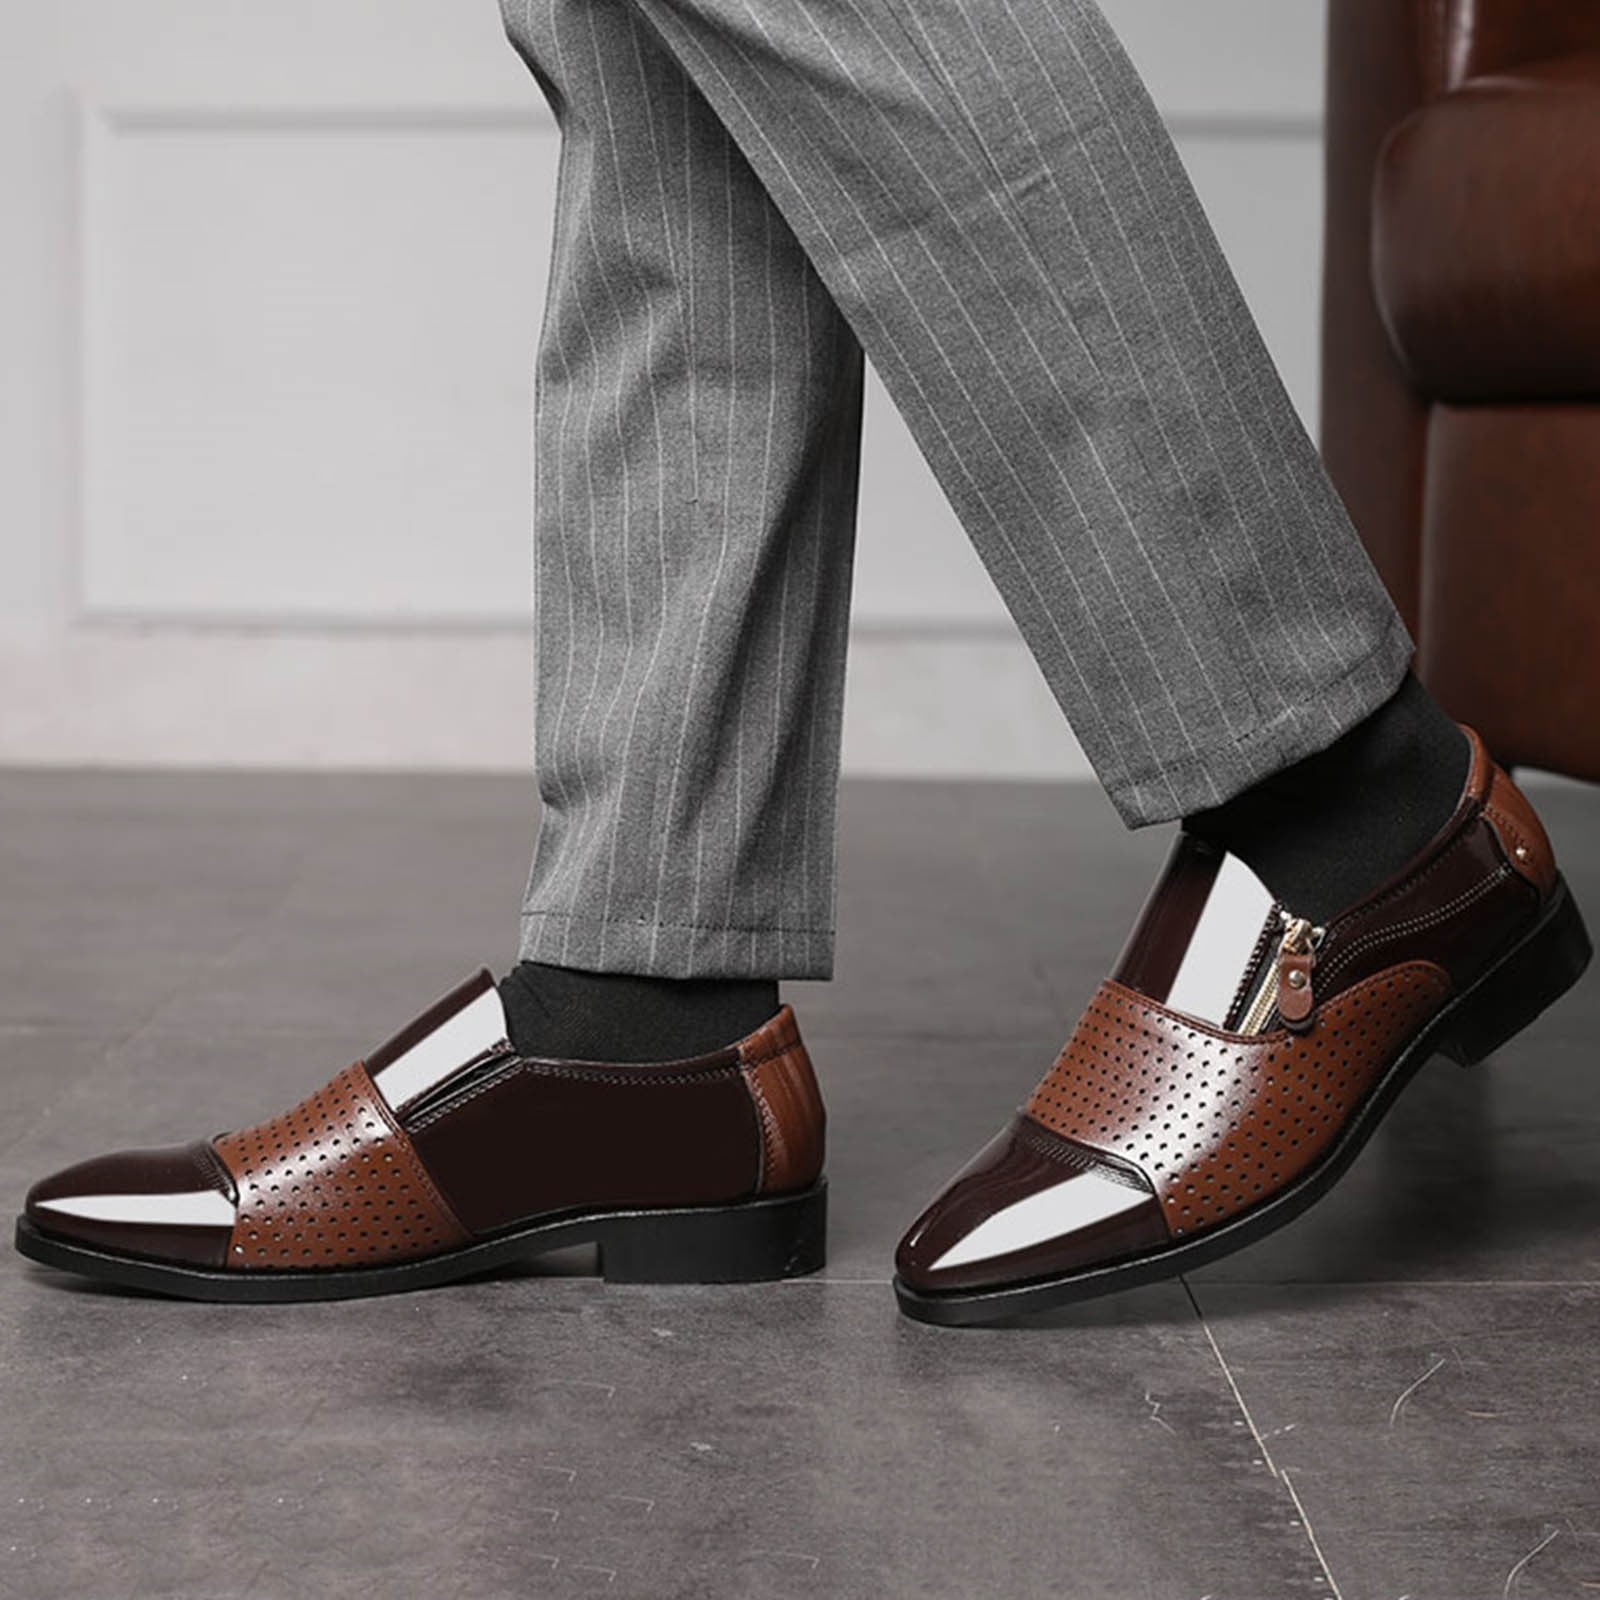 Men's Shoes - Dress & Casual Shoes